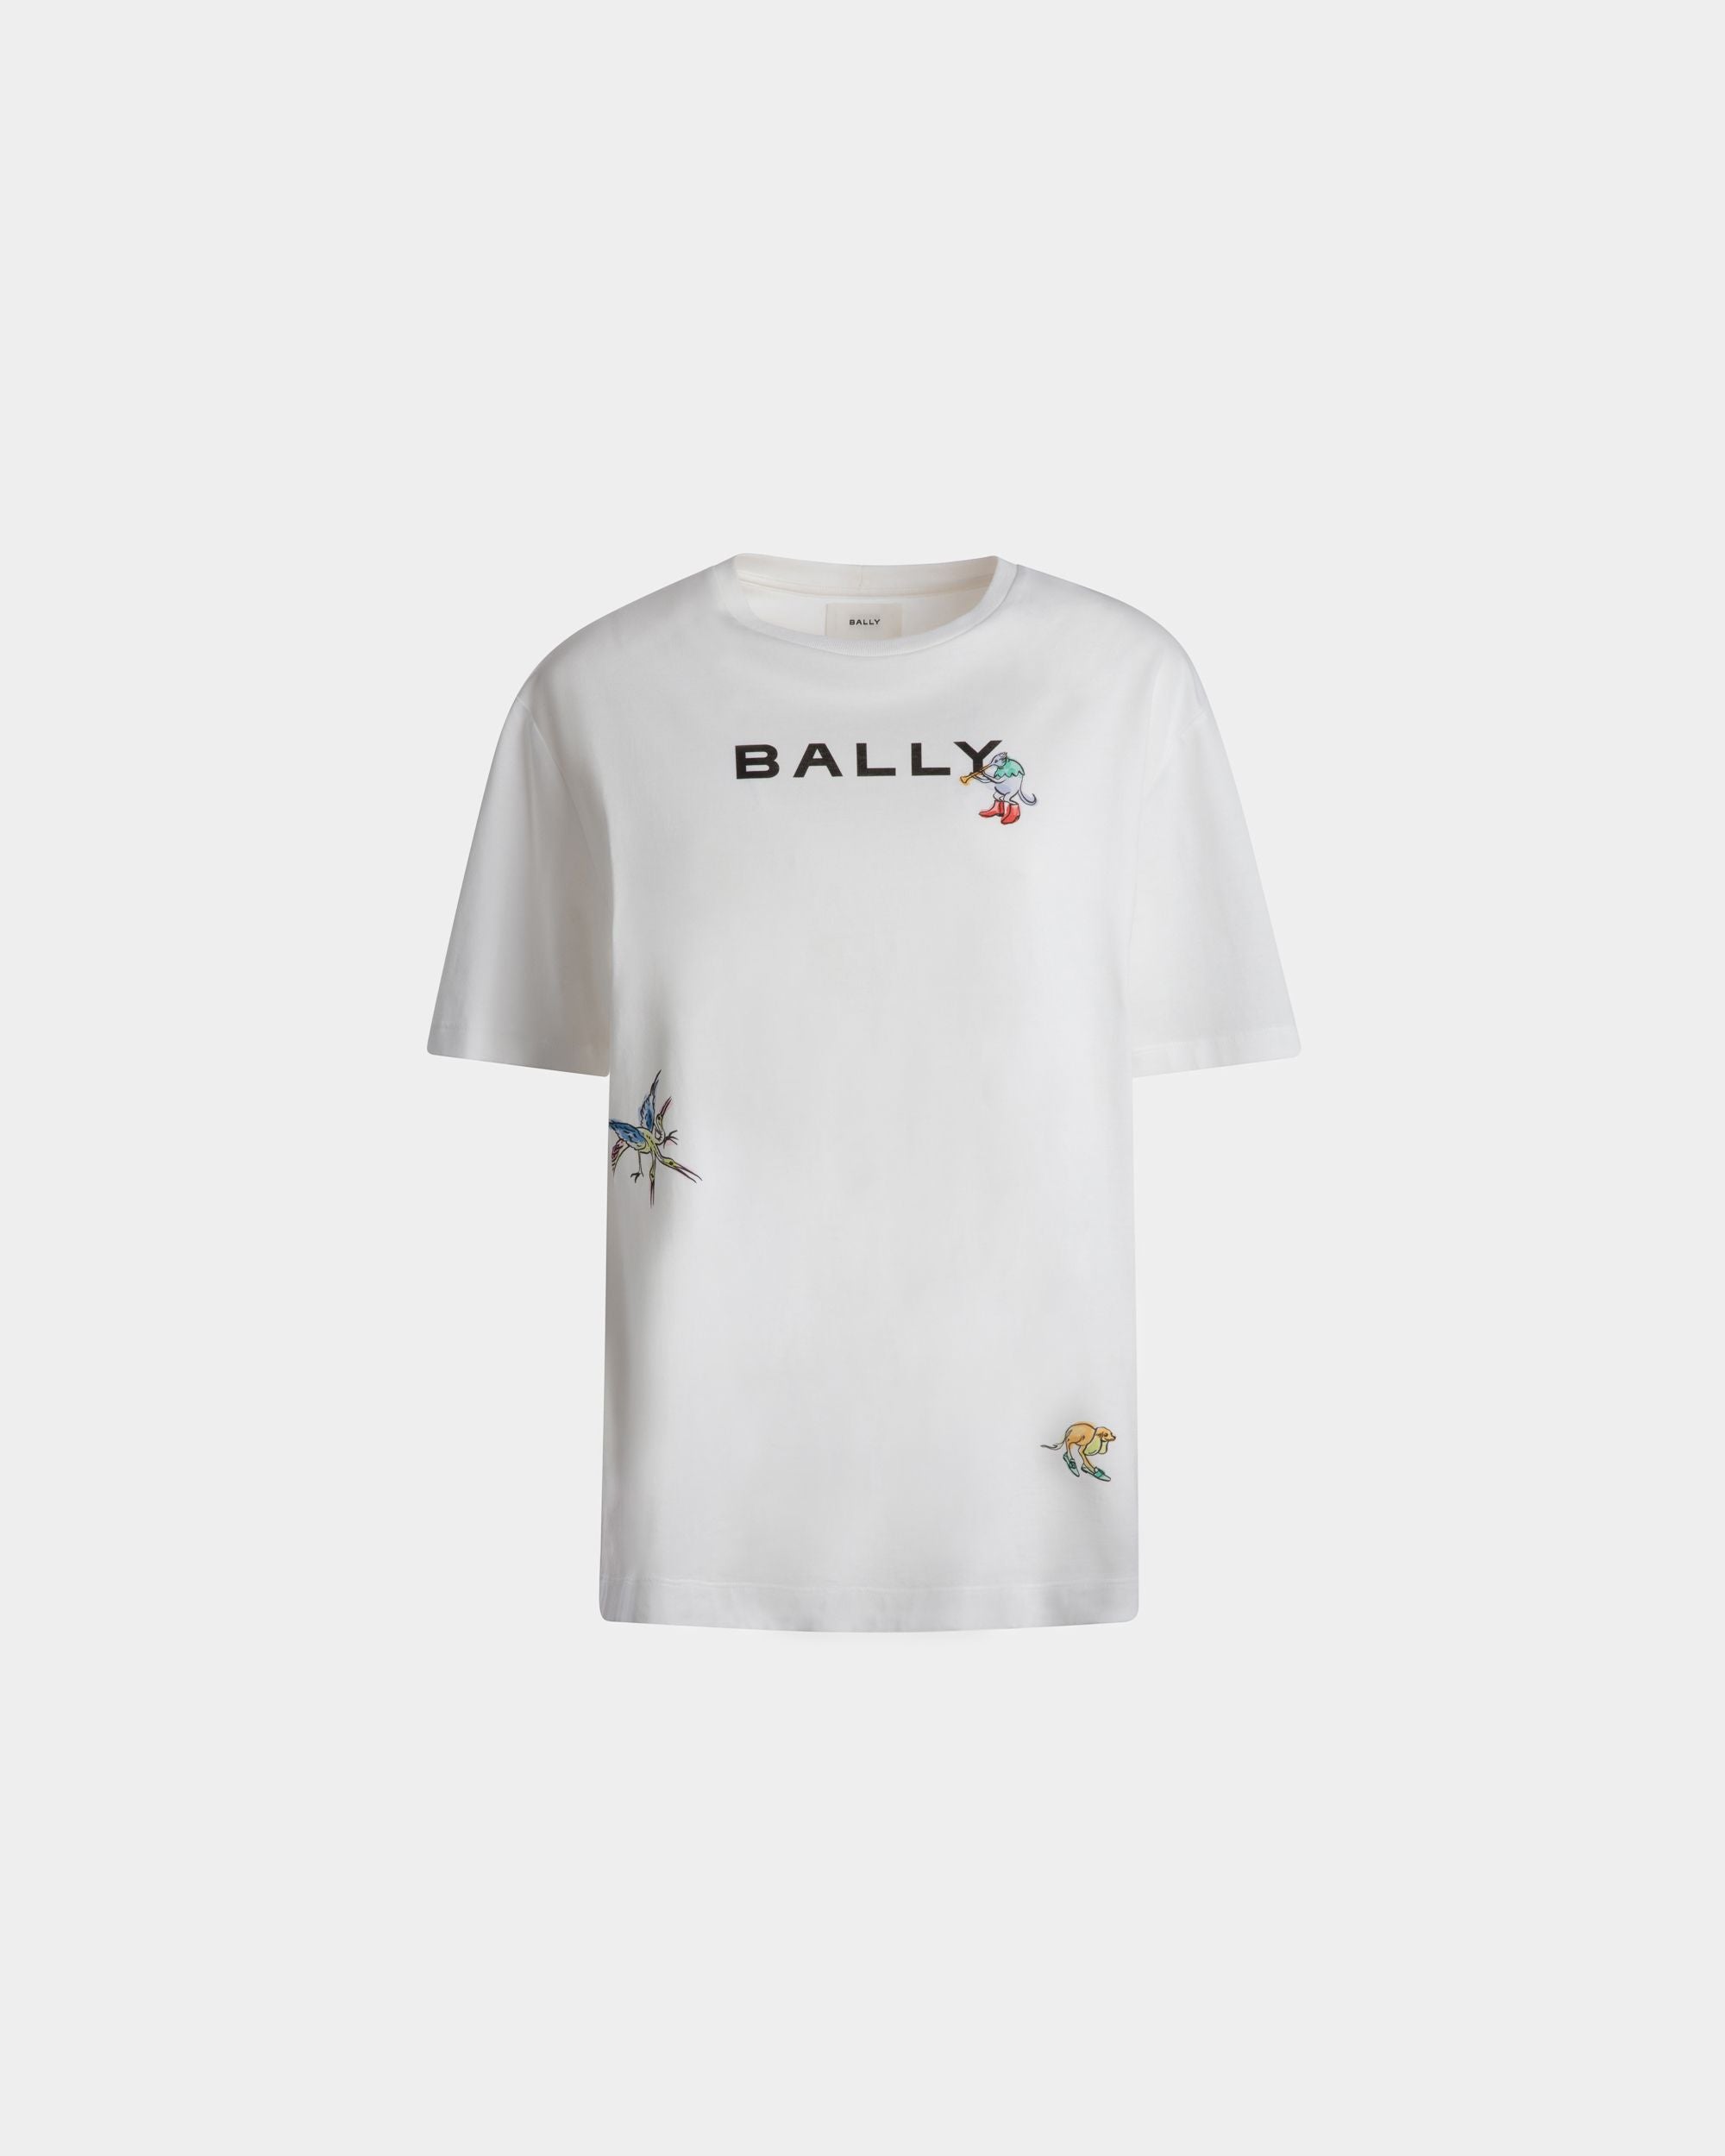 T-shirt da donna in cotone bianco | Bally | Still Life Fronte